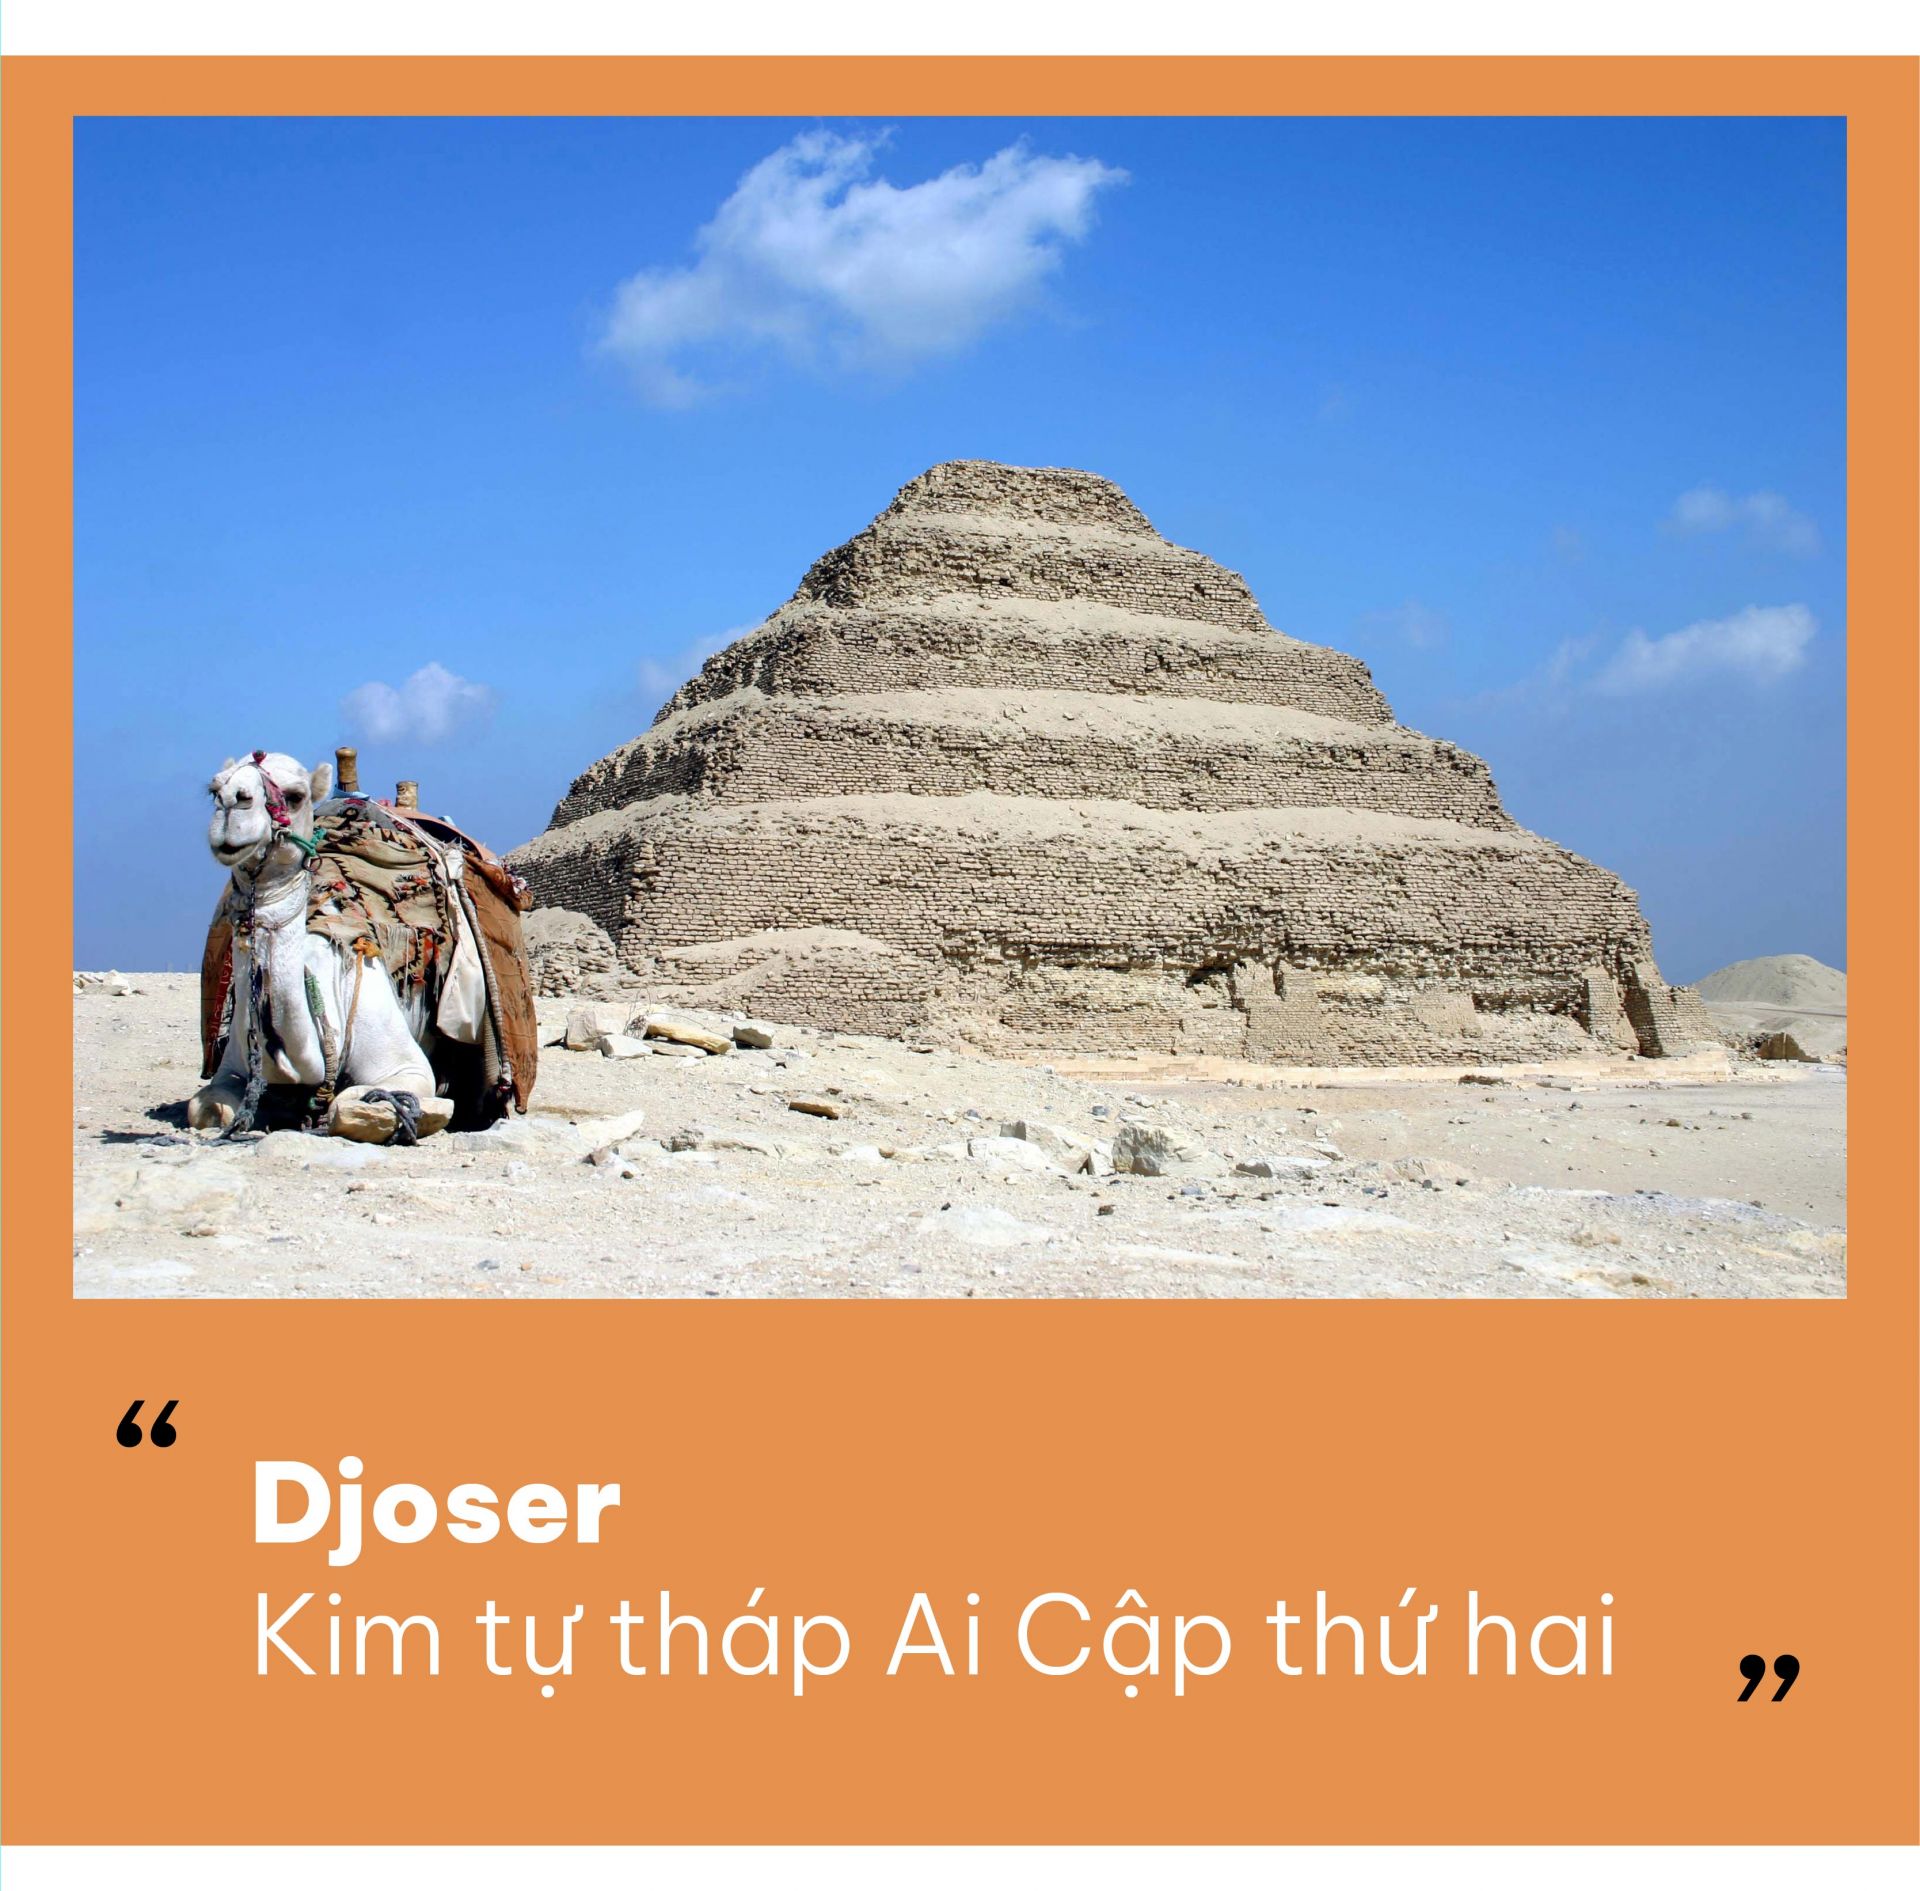 Dần dần, kim tự tháp trở thành một biểu tượng quyền lực của người Ai Cập cổ đại. Việc Kim tự tháp Ai Cập được xây dựng với quy mô lớn thì cũng là lúc chế độ chuyên quyền của Pharaoh ở mức độ cao nhất. Qua đó mà các kim tự tháp lớn và nổi tiếng nhất như Giza đã được xây dựng trong giai đoạn này. Về sau, quyền lực trở nên bị phân tán dần, mức độ xây dựng cũng thu hẹp dần, không còn được cầu kỳ và chú trọng như trước nữa. Rất lâu sau đó nữa, khi Ai Cập trong thời kỳ bị rơi vào ách thống trị của các vị vua Napata, việc xây dựng các công trình kim tự tháp Ai Cập một lần nữa phát triển ở vùng Sudan ngày nay. Qua đó, số lượng công trình ở thời đại này là khoảng 200 lăng mộ kim tự tháp lấy ý tưởng từ kim tự tháp trước đó và được xây dựng gần trung tâm vương quốc Sudan Meroe (300 TCN – 300 SCN).